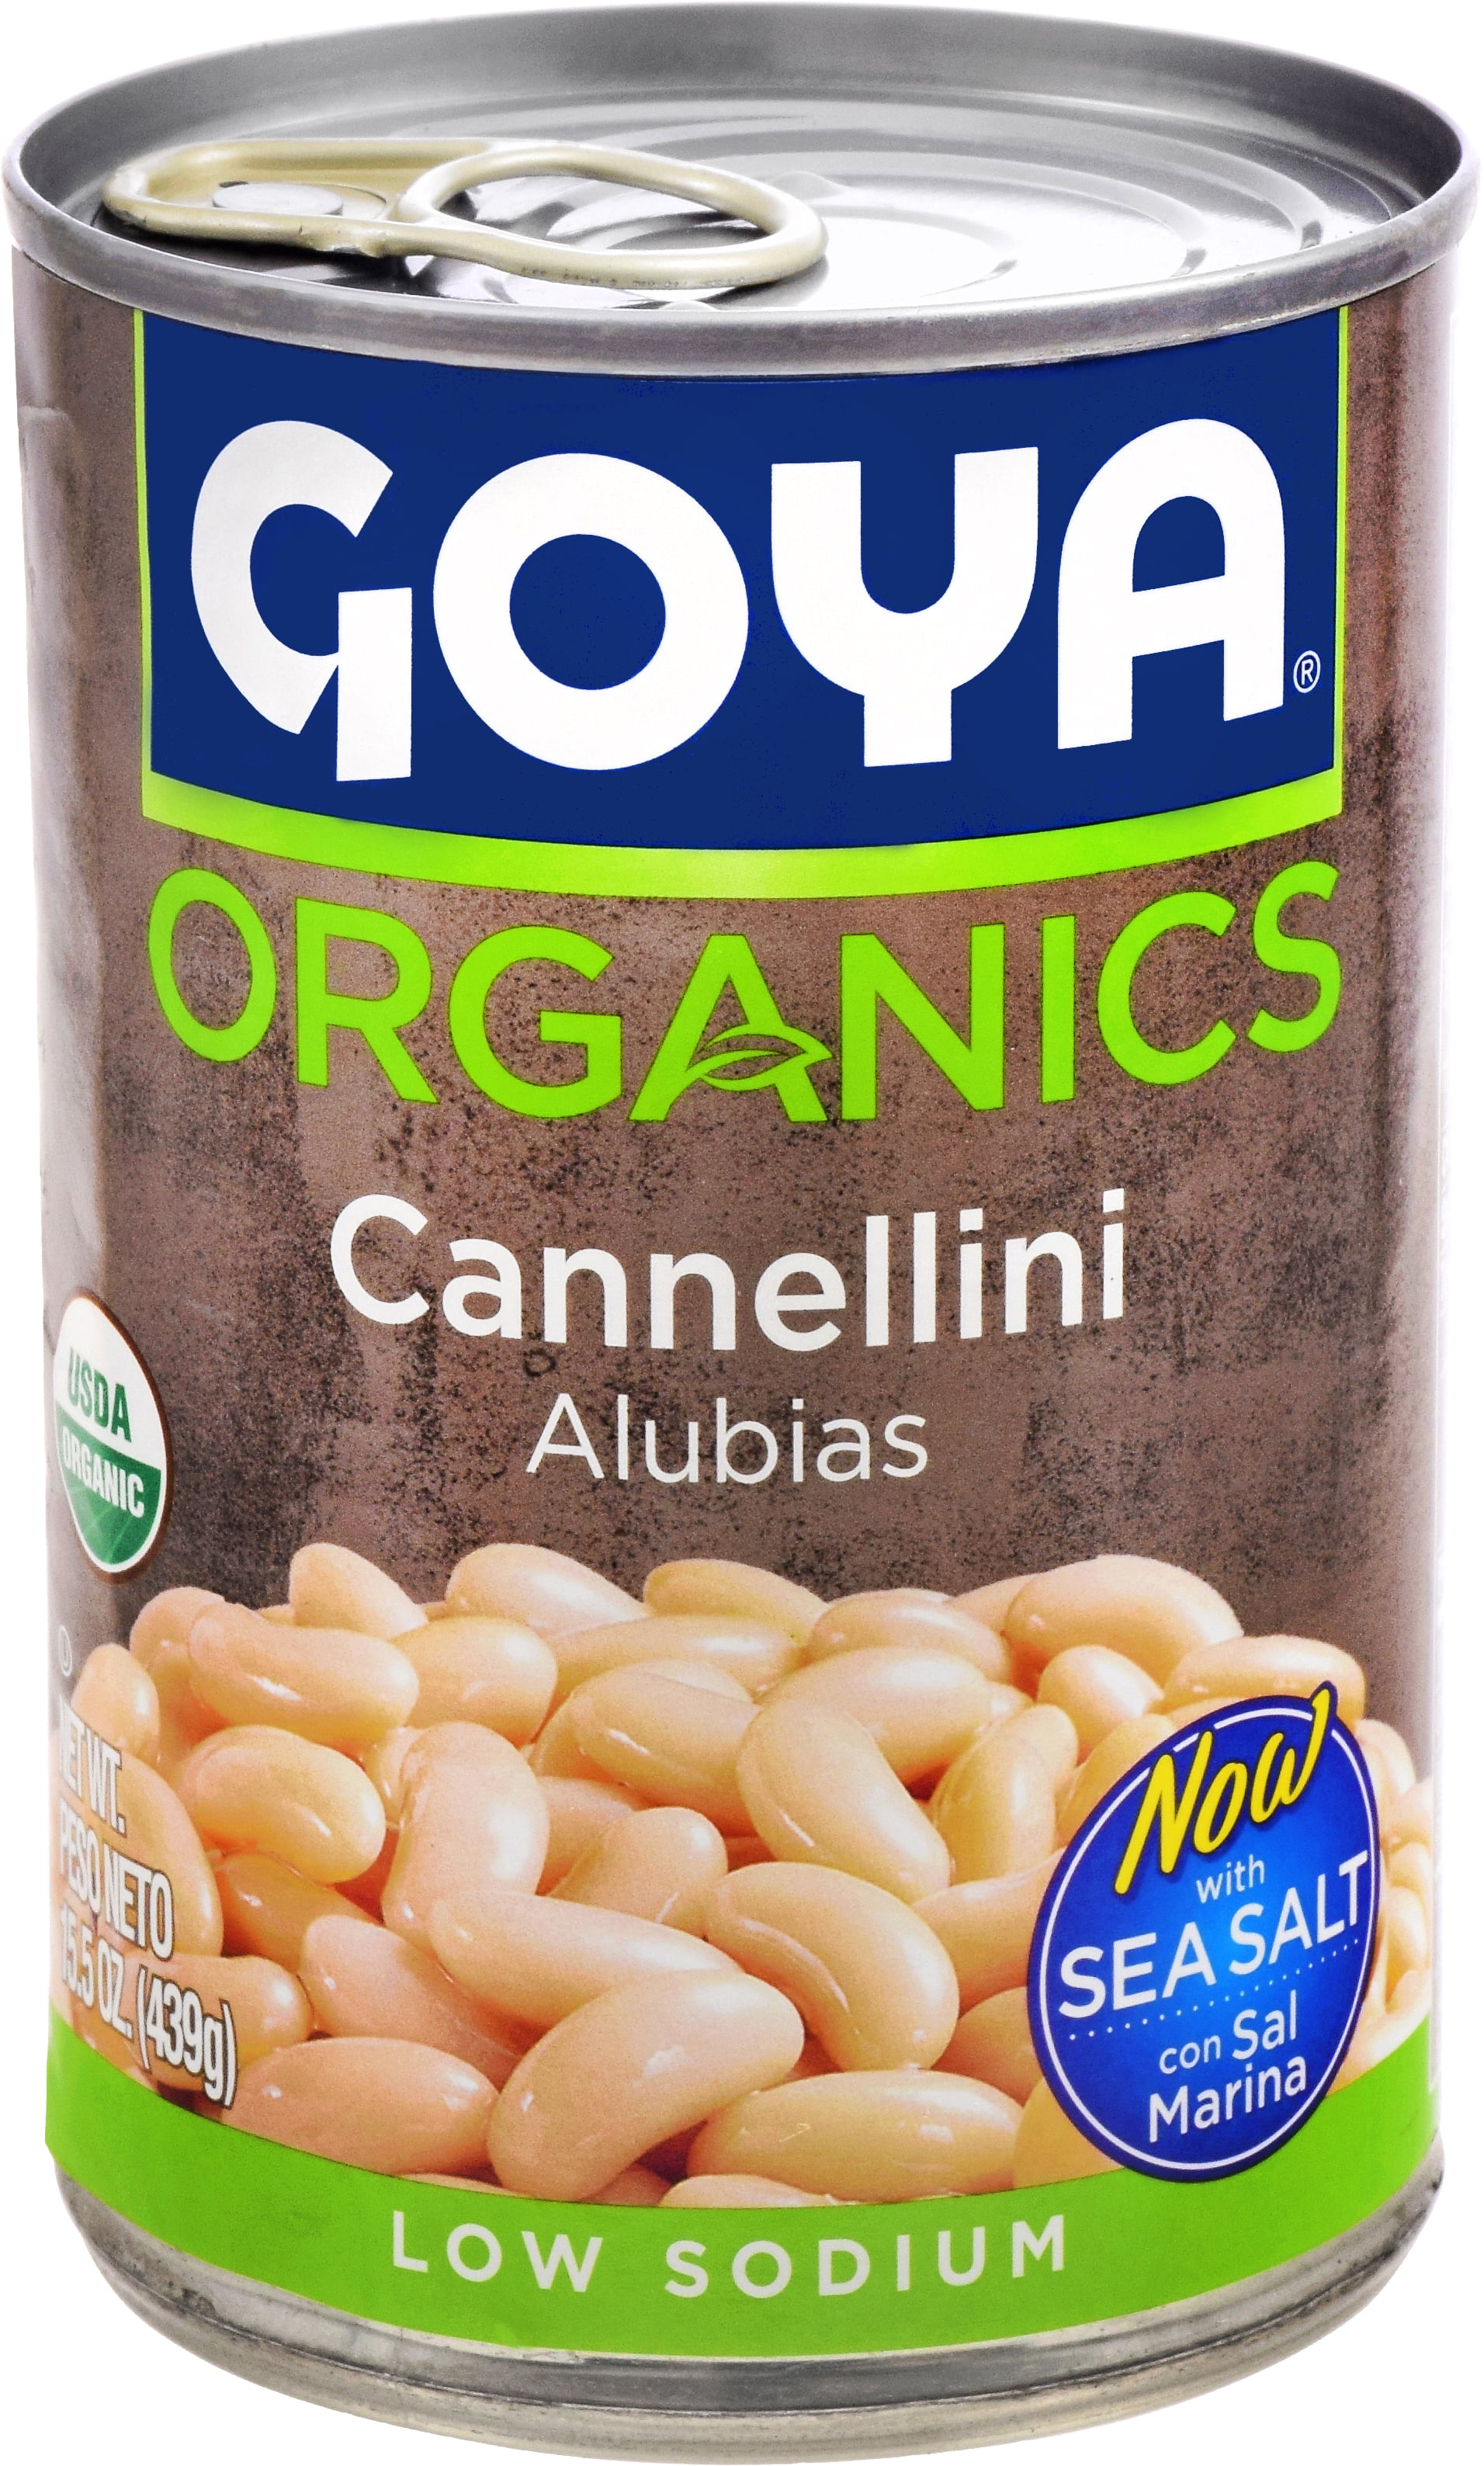 GOYA Organics Cannellini  Low Sodium, 15.5 oz